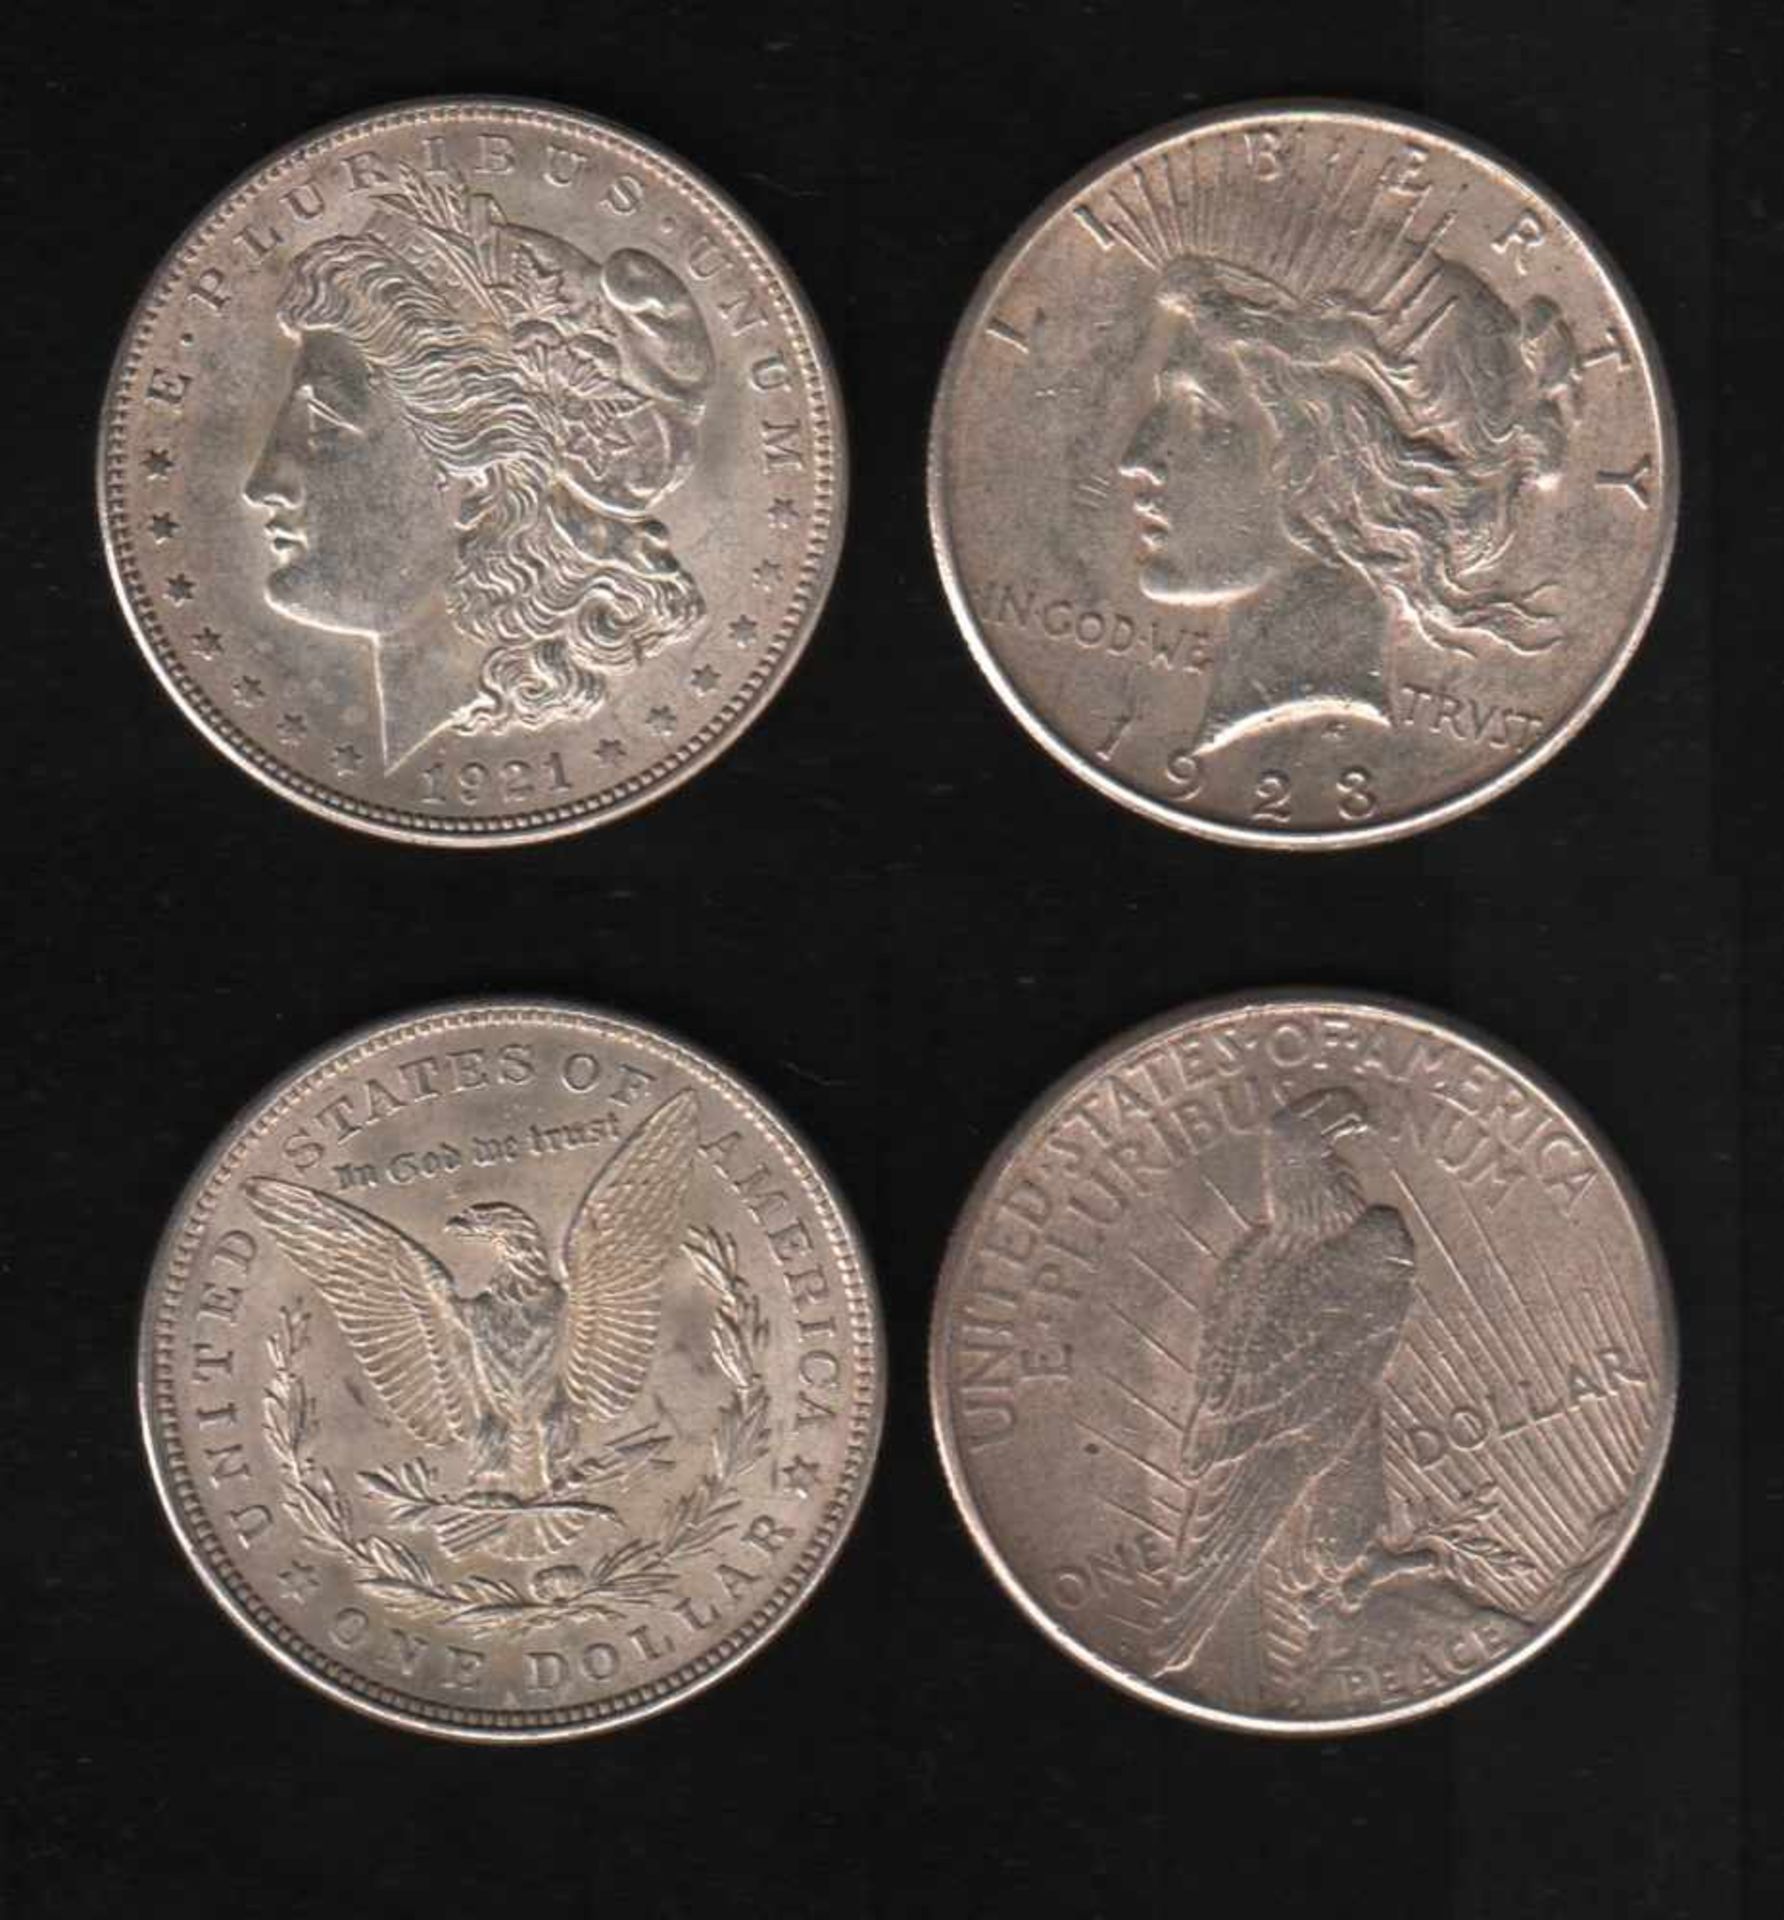 USA. Silbermünze. 1 Dollar.Freiheitskopf (Morgan - Type). 1921. Vorderseite: Freiheitskopf und